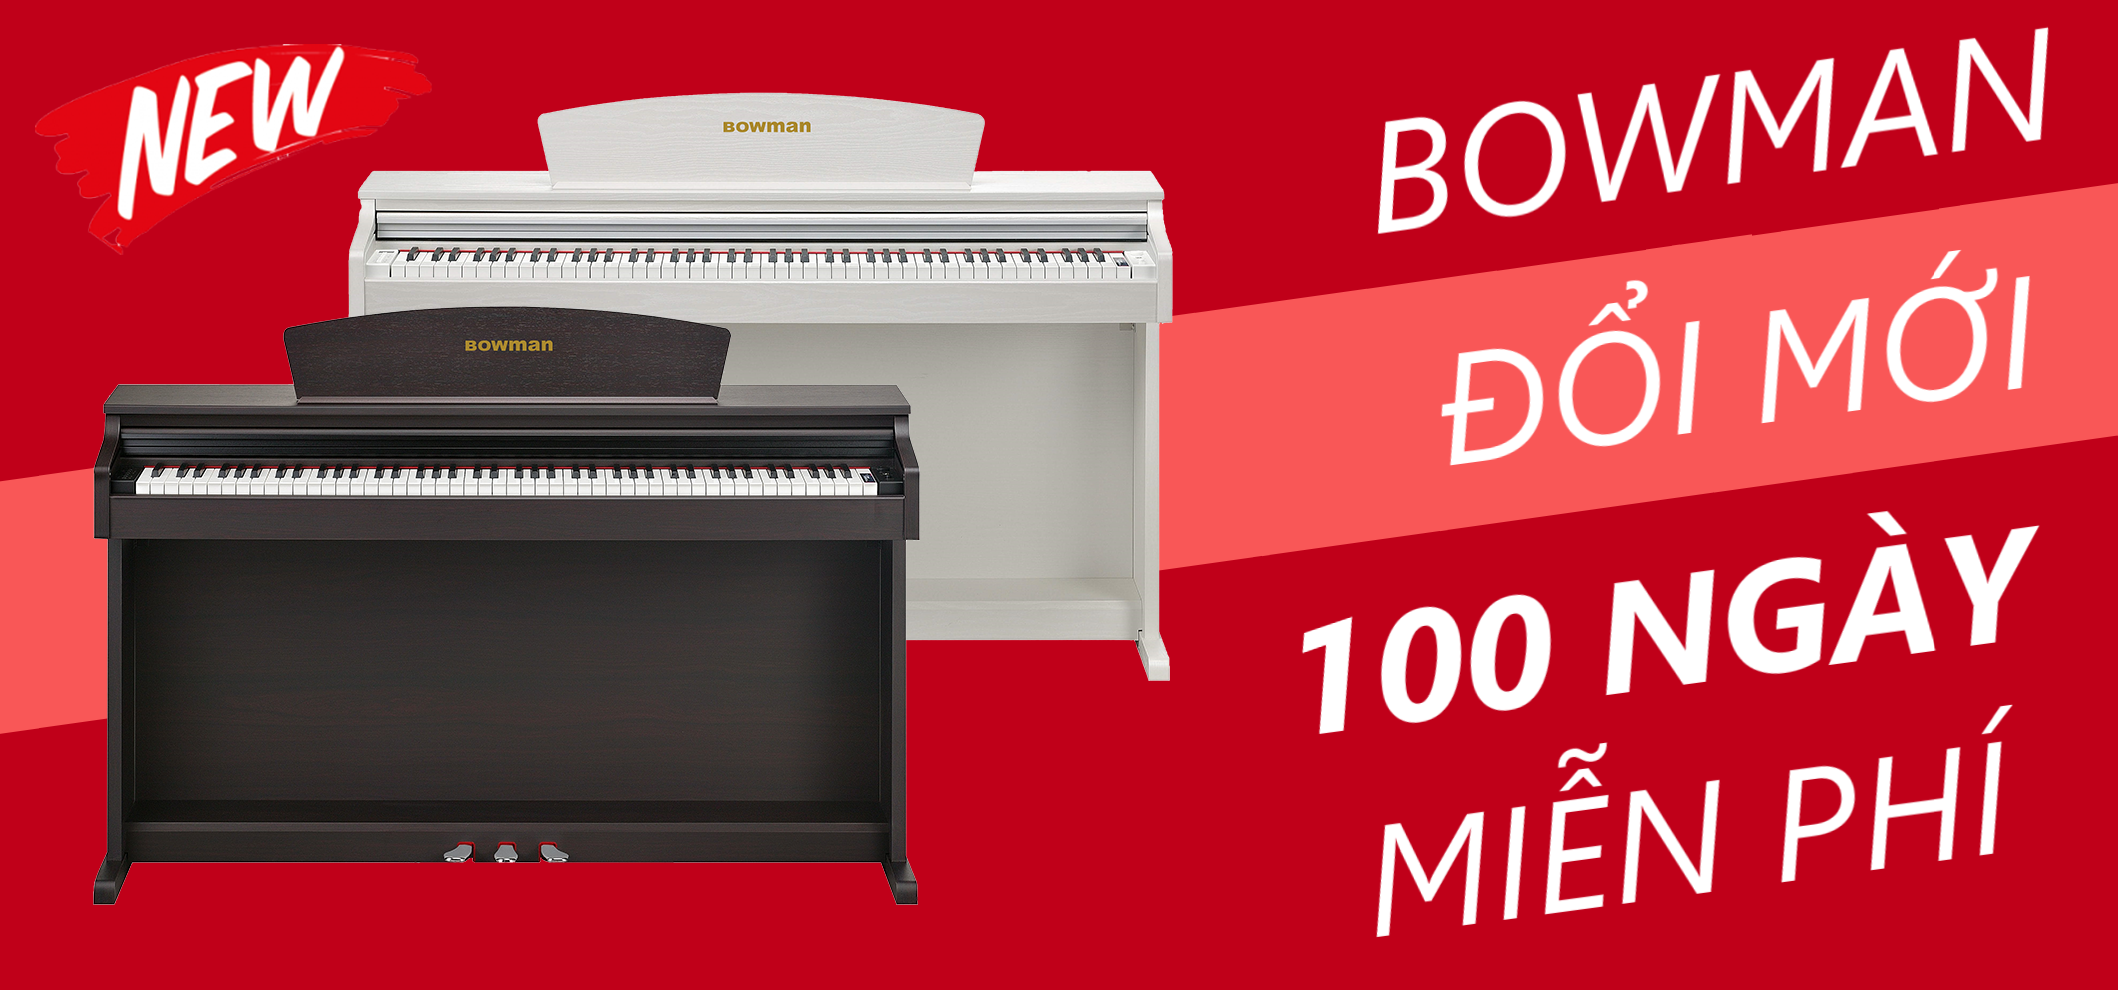 Bowman PIANO Việt Nam ra mắt chương trình ĐỔI MỚI 100 NGÀY MIỄN PHÍ